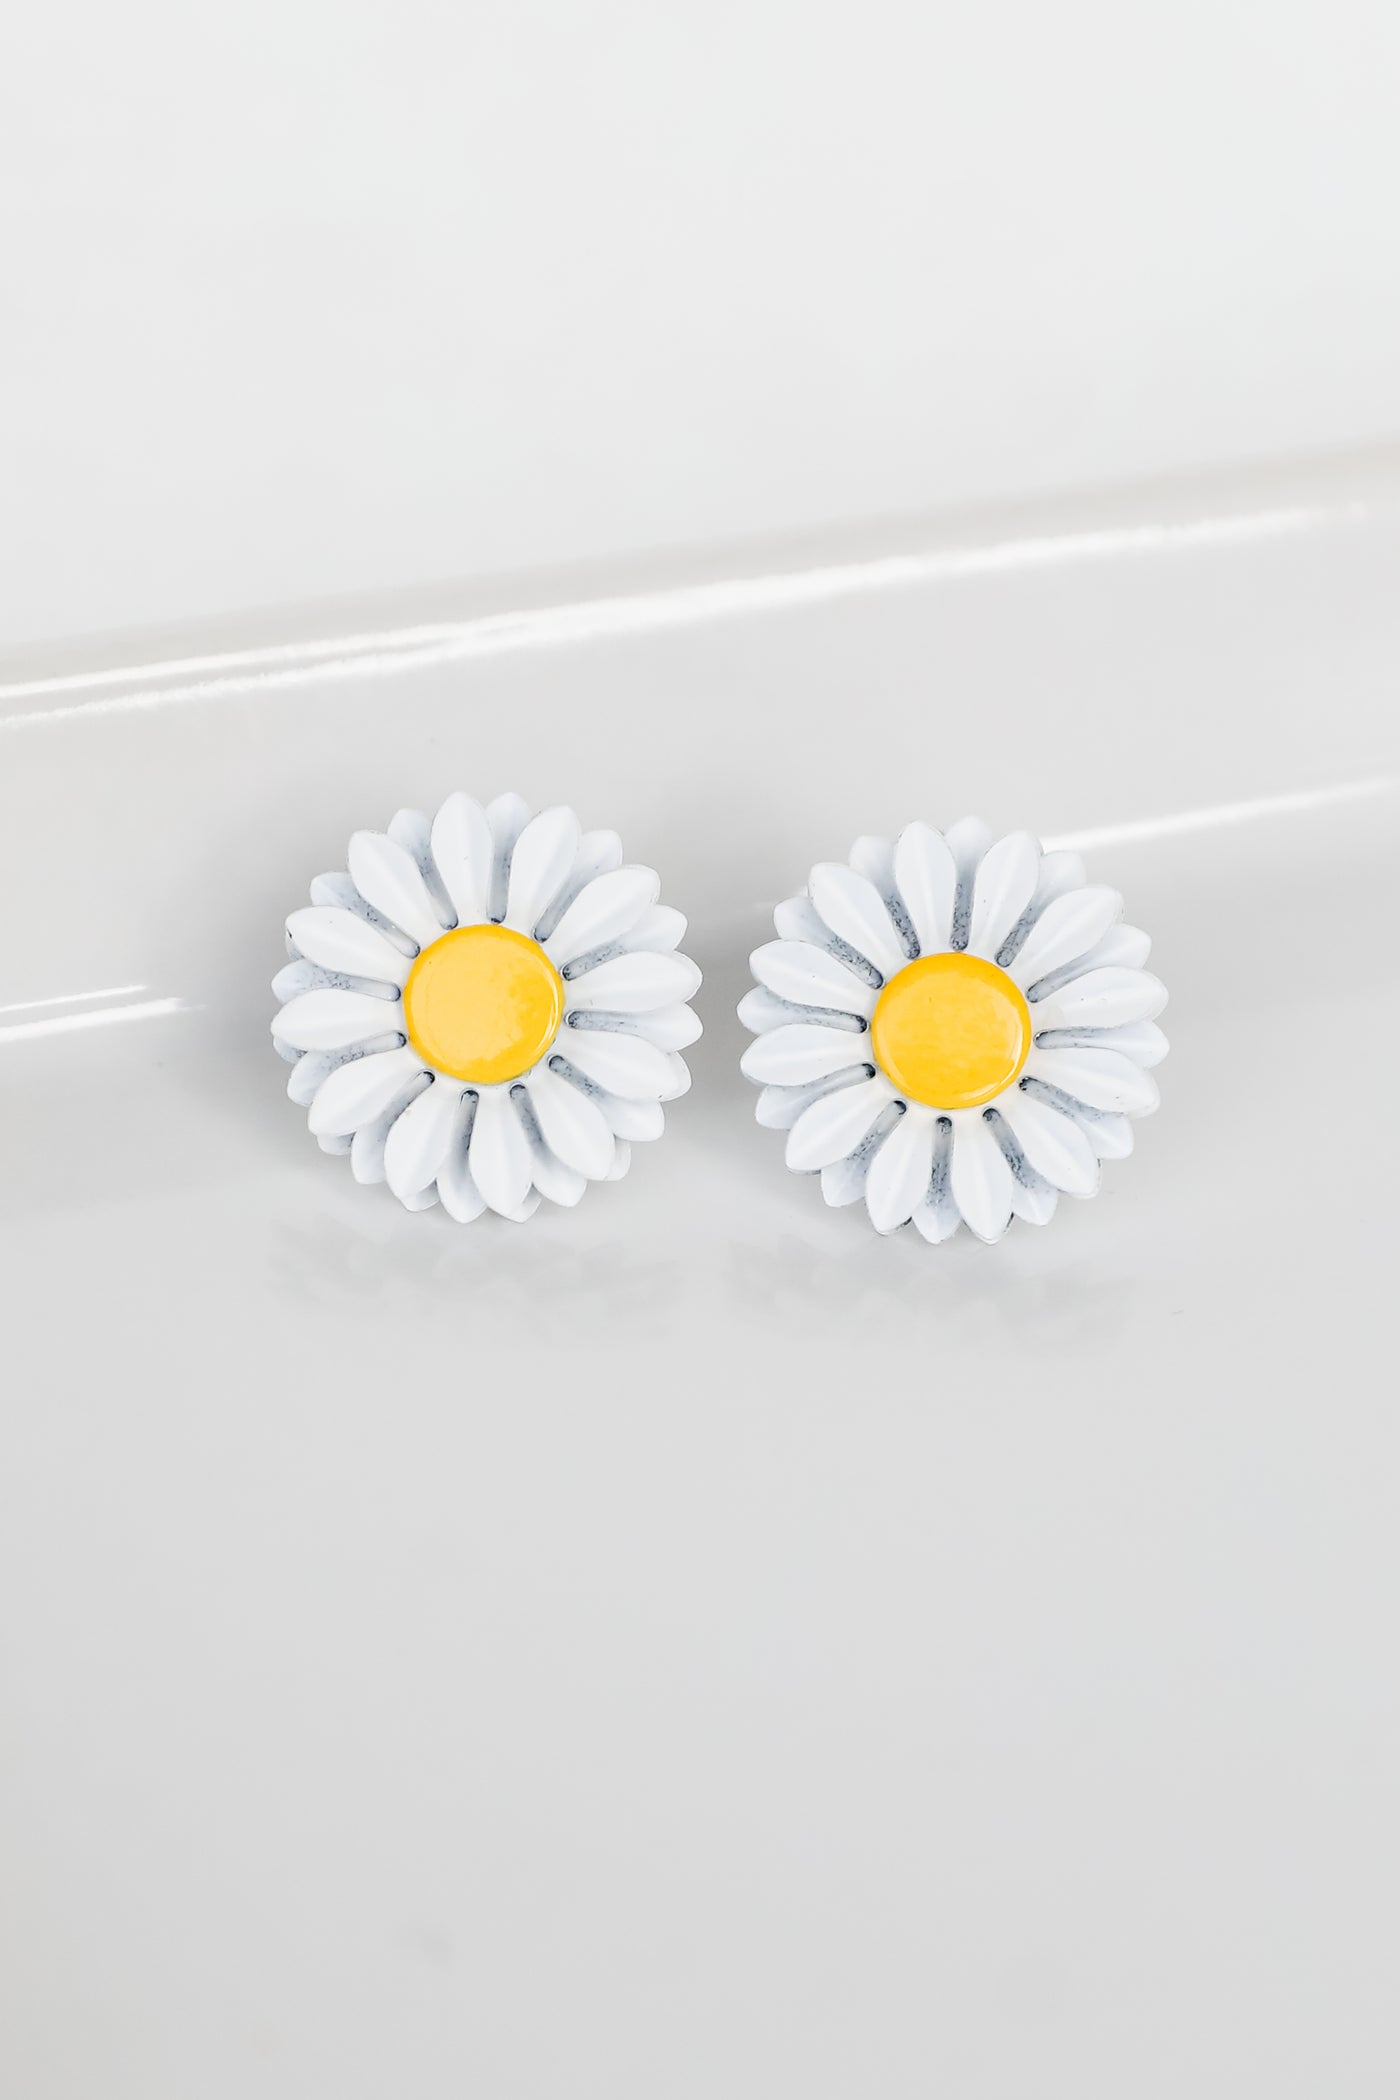 Flower Stud Earrings in white flat lay